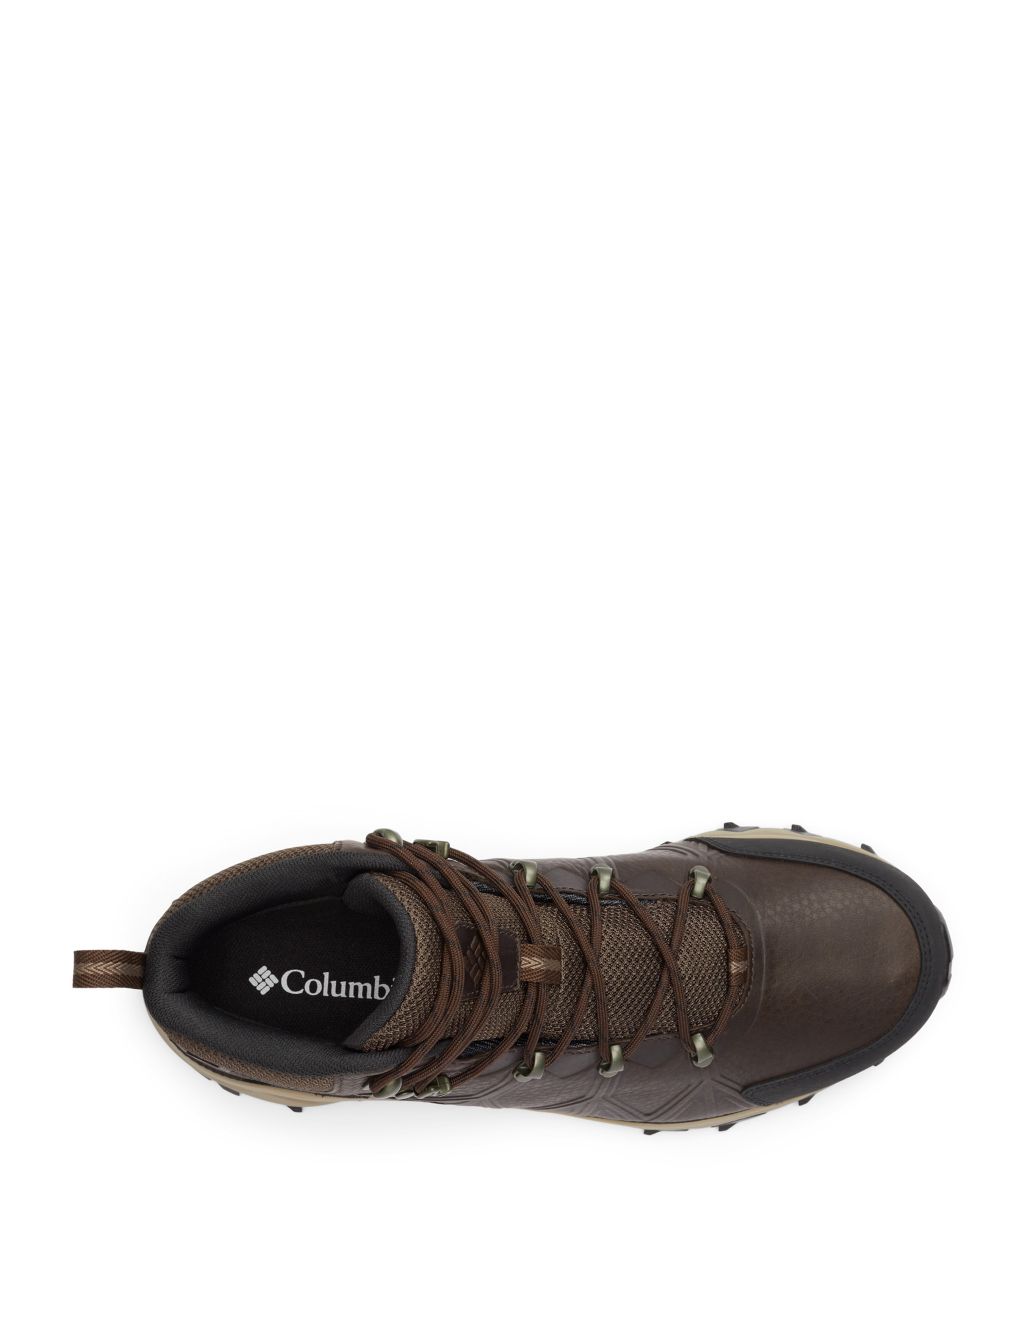 Peakfreak II Mid Outdry Walking Boots image 4